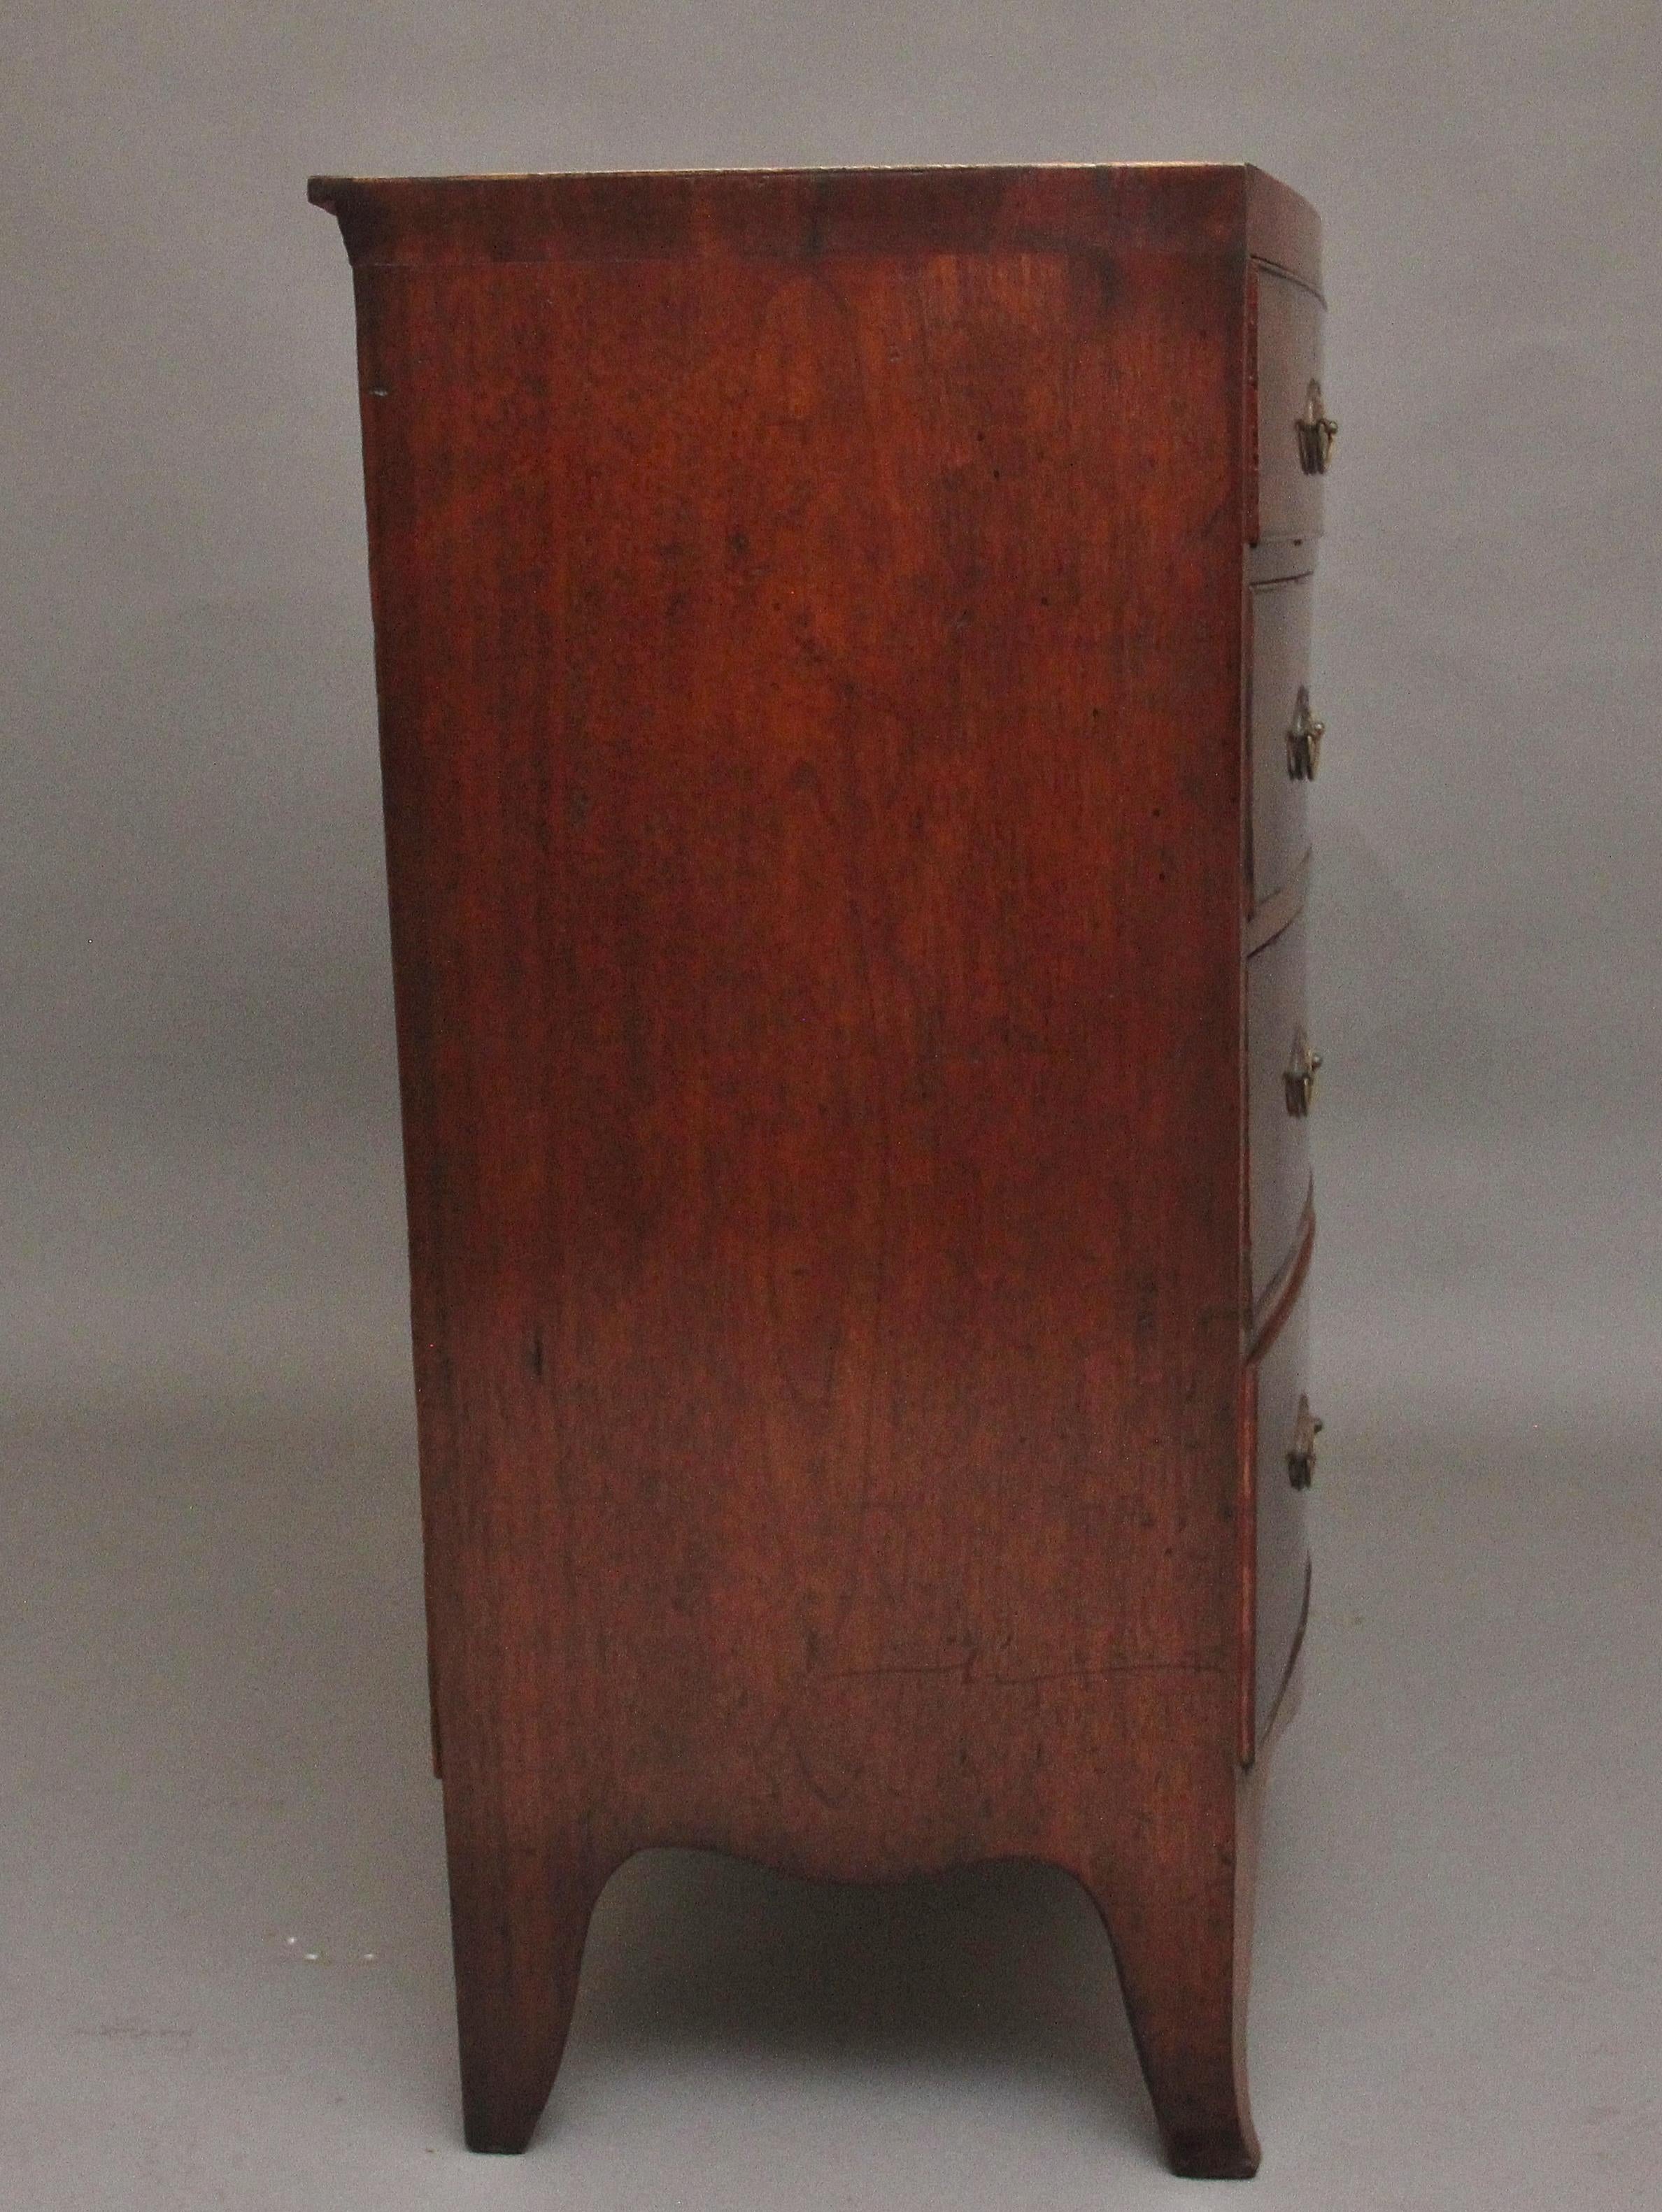 Mahogany Early 19th Century mahogany bowfront chest